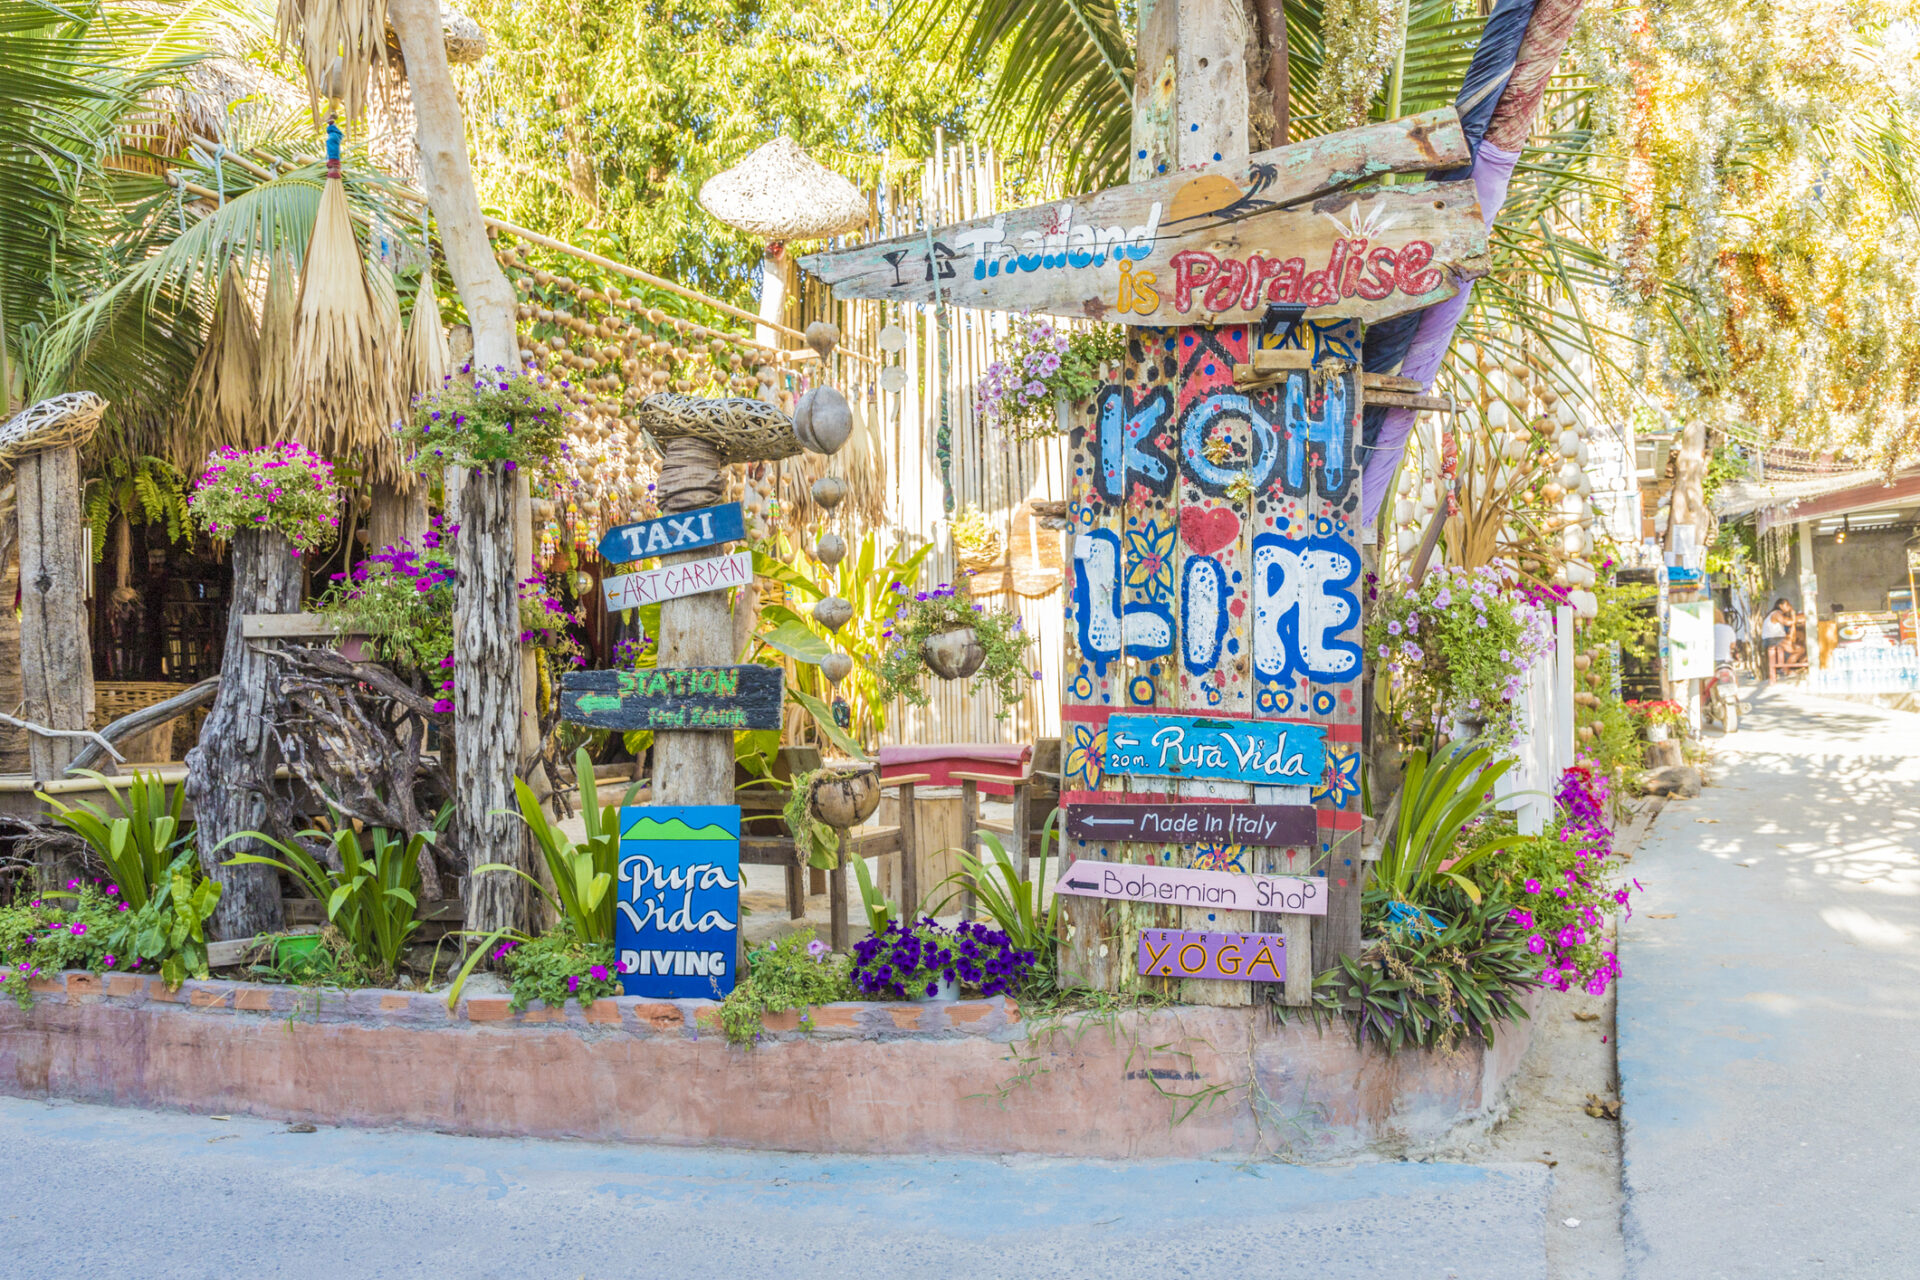 Nyd synet af palmetræer langs vejene i Koh - Perfekt naturskønt rejsemål for din næste ferie.